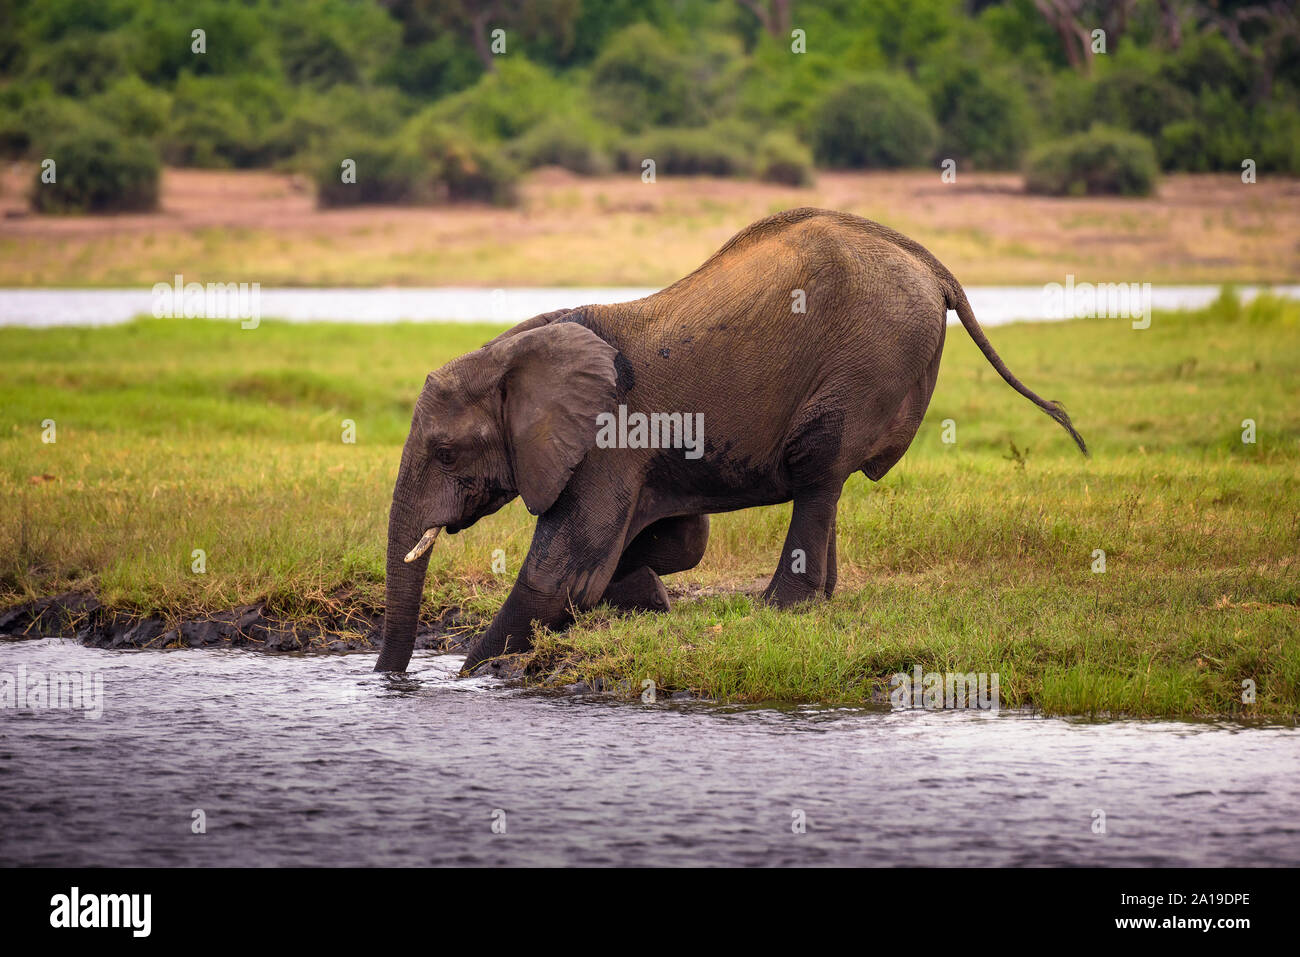 Elephant crossing the Chobe River in Chobe National Park, Botswana Stock Photo